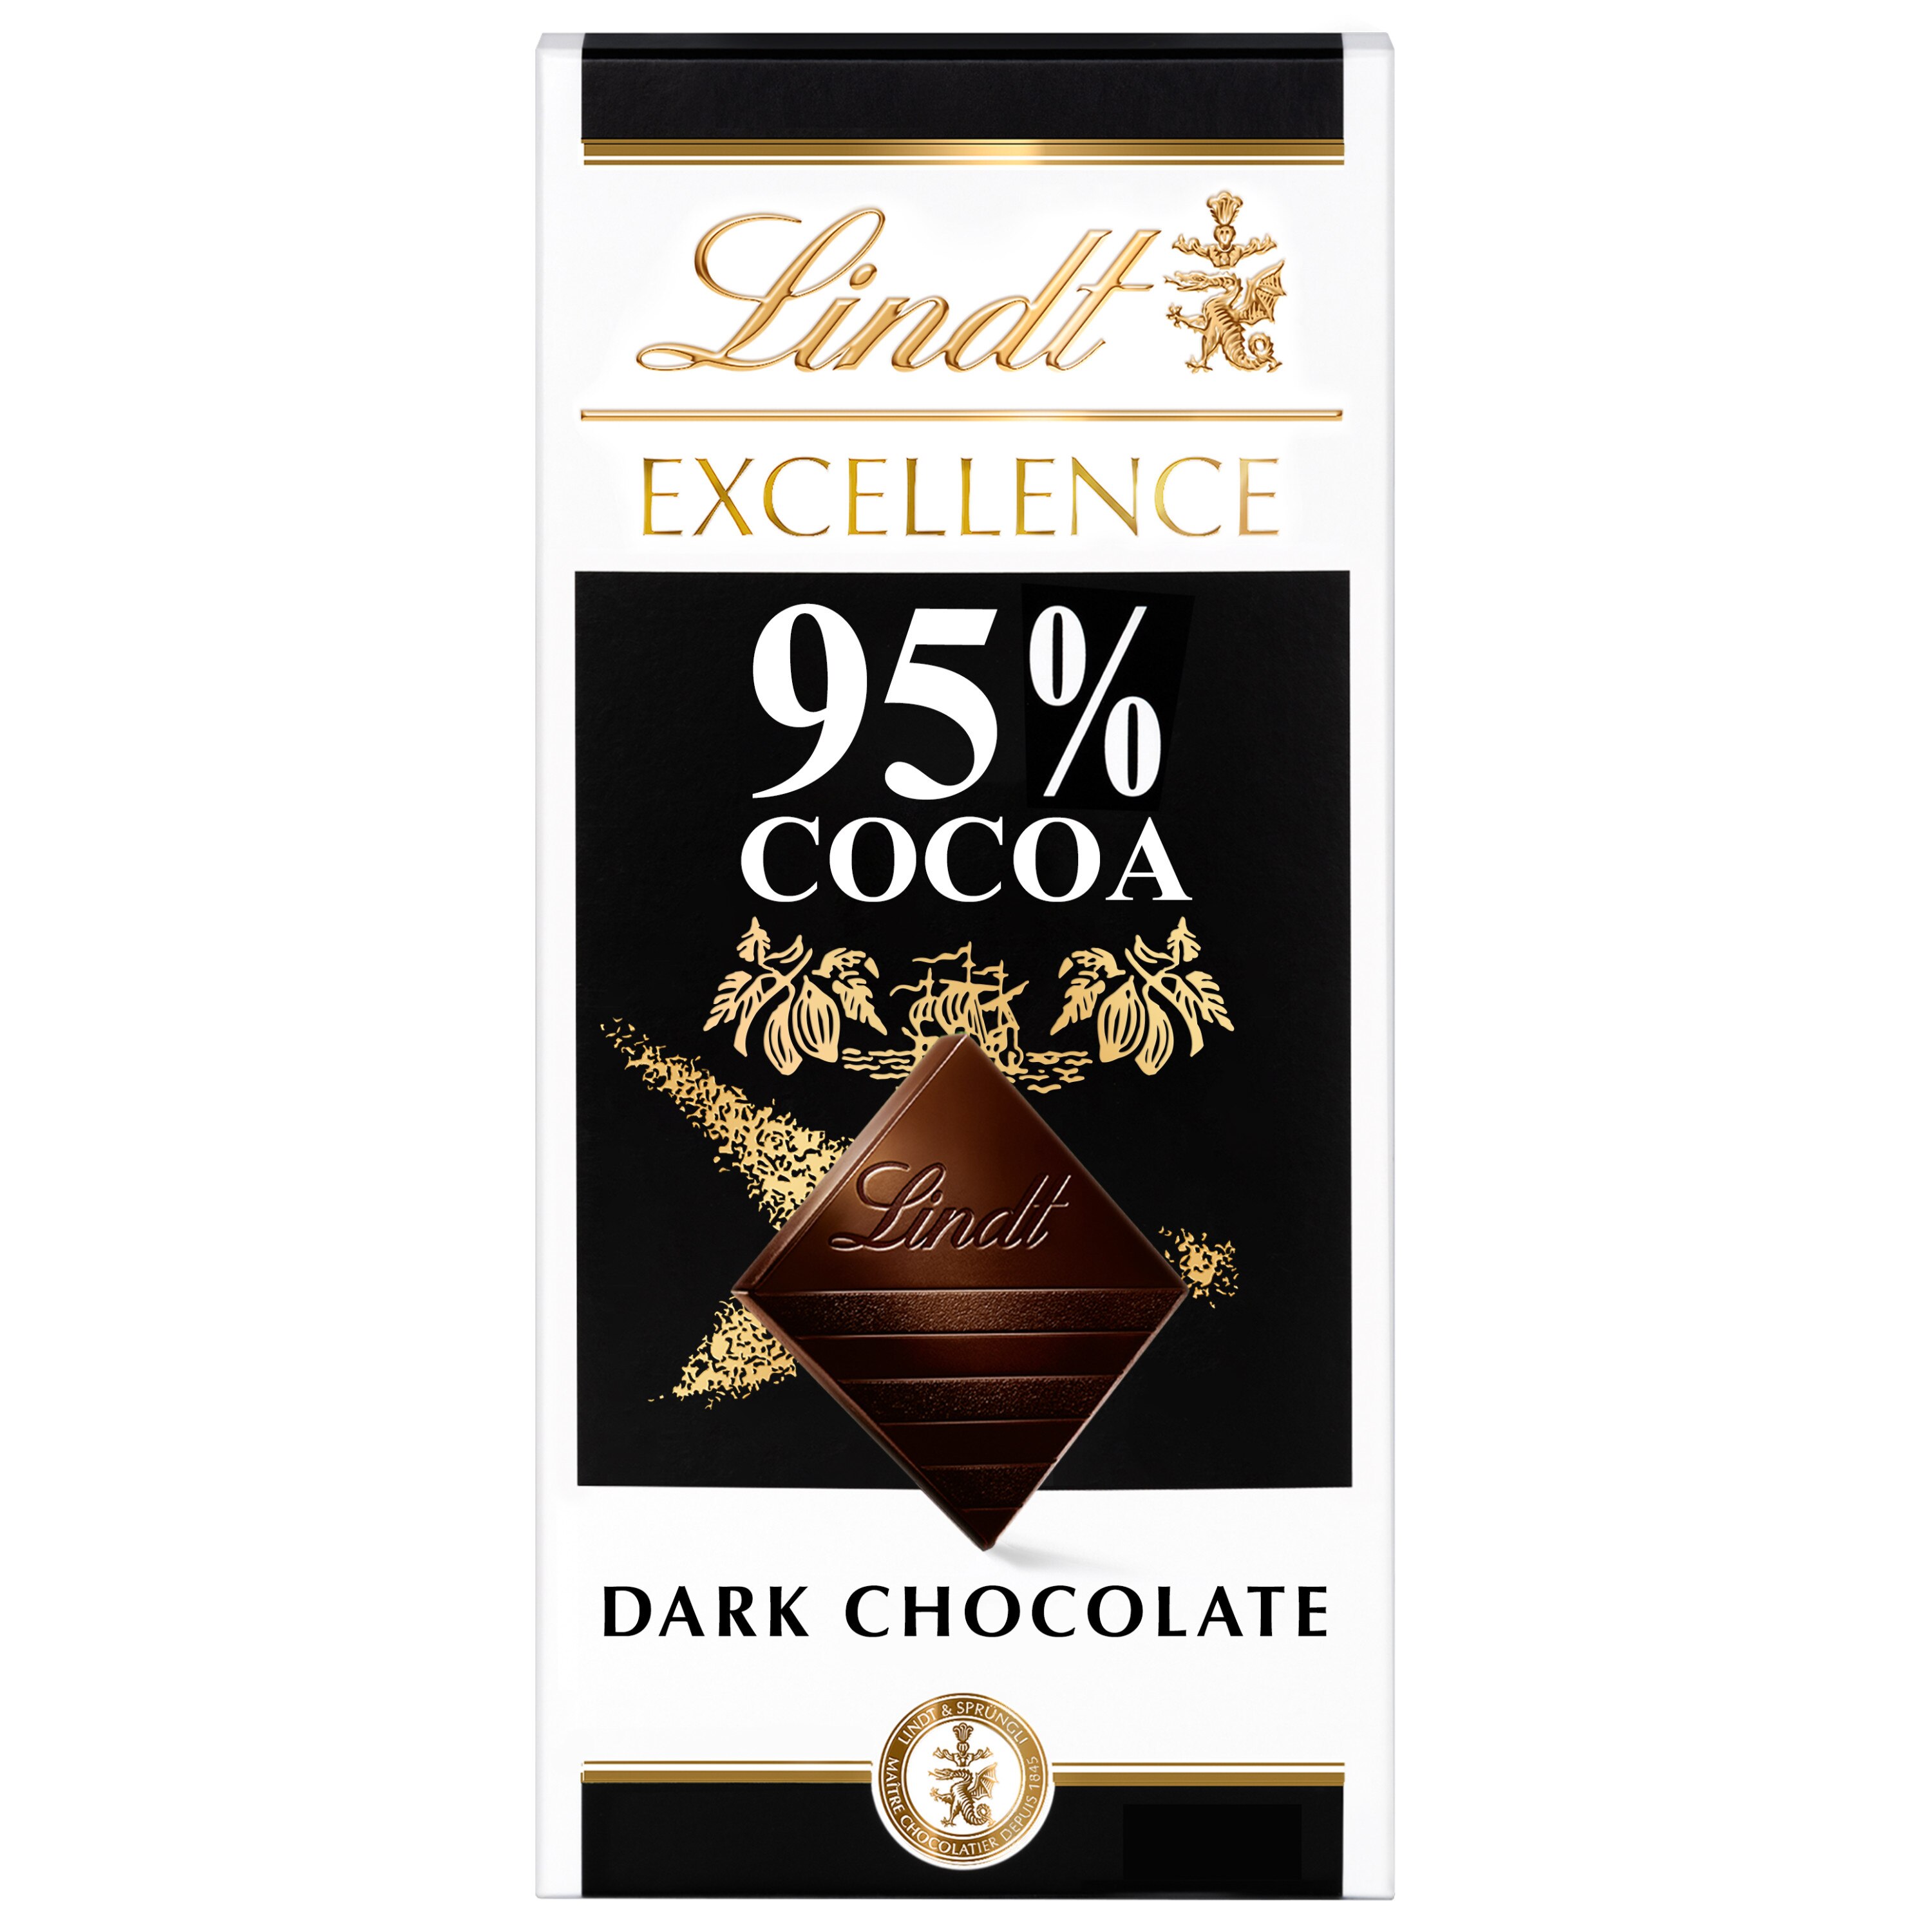 Lindt chocolate buy online